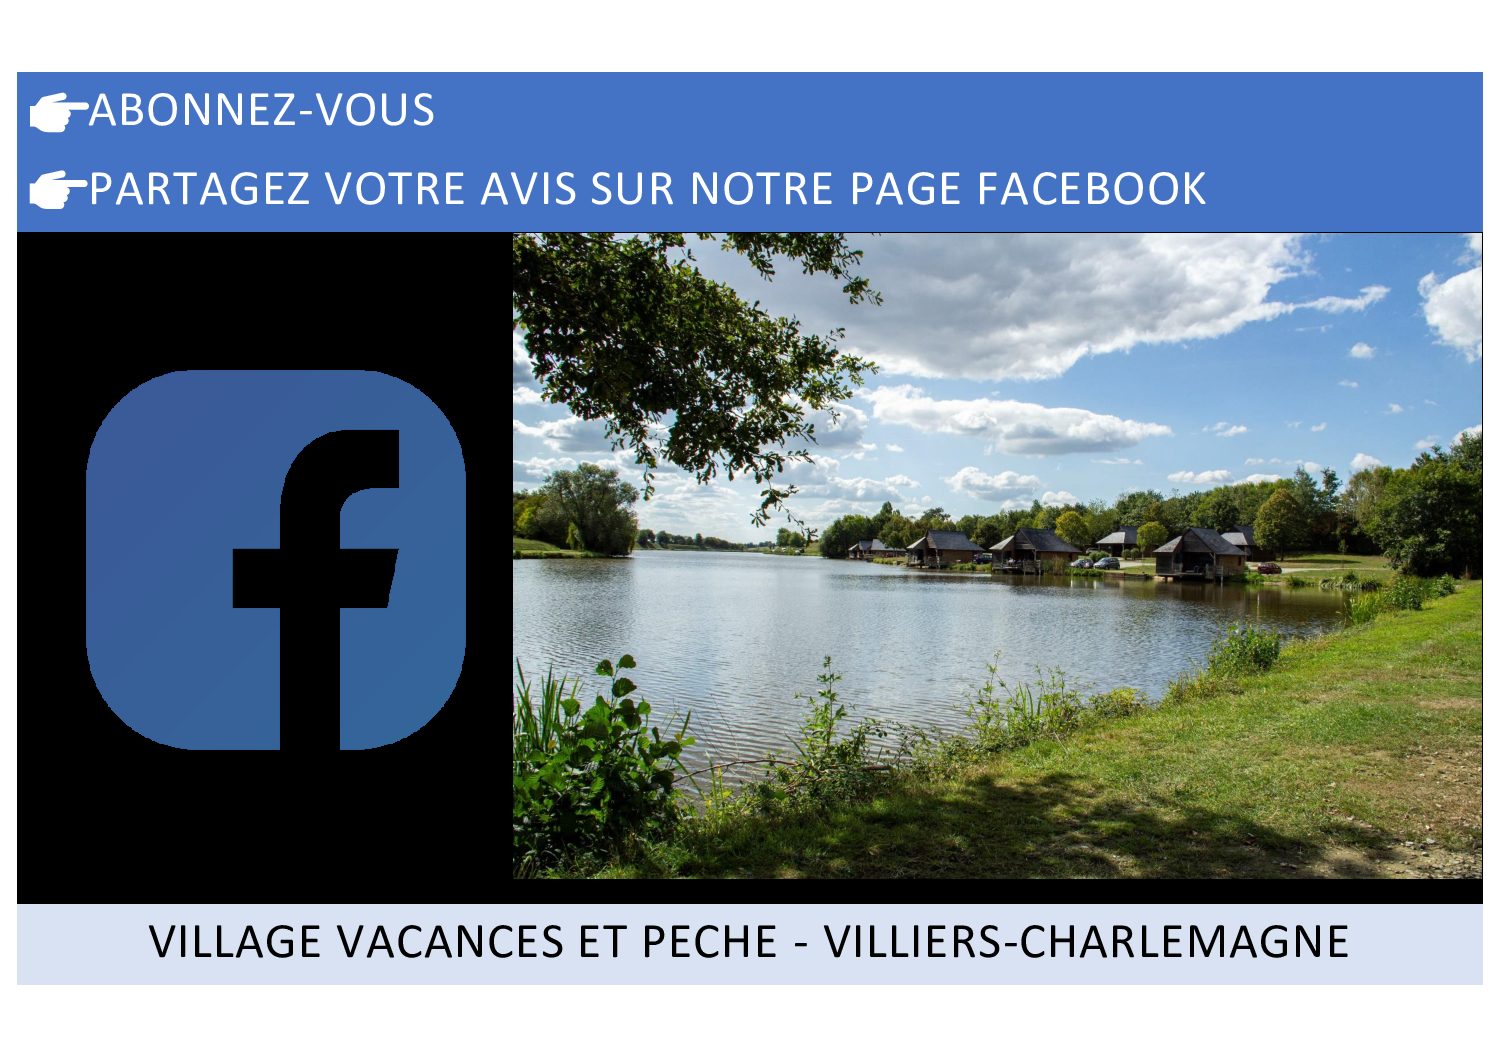 Nouvelle page FACEBOOK : Village Vacances et Pêche - Villiers-Charlemagne